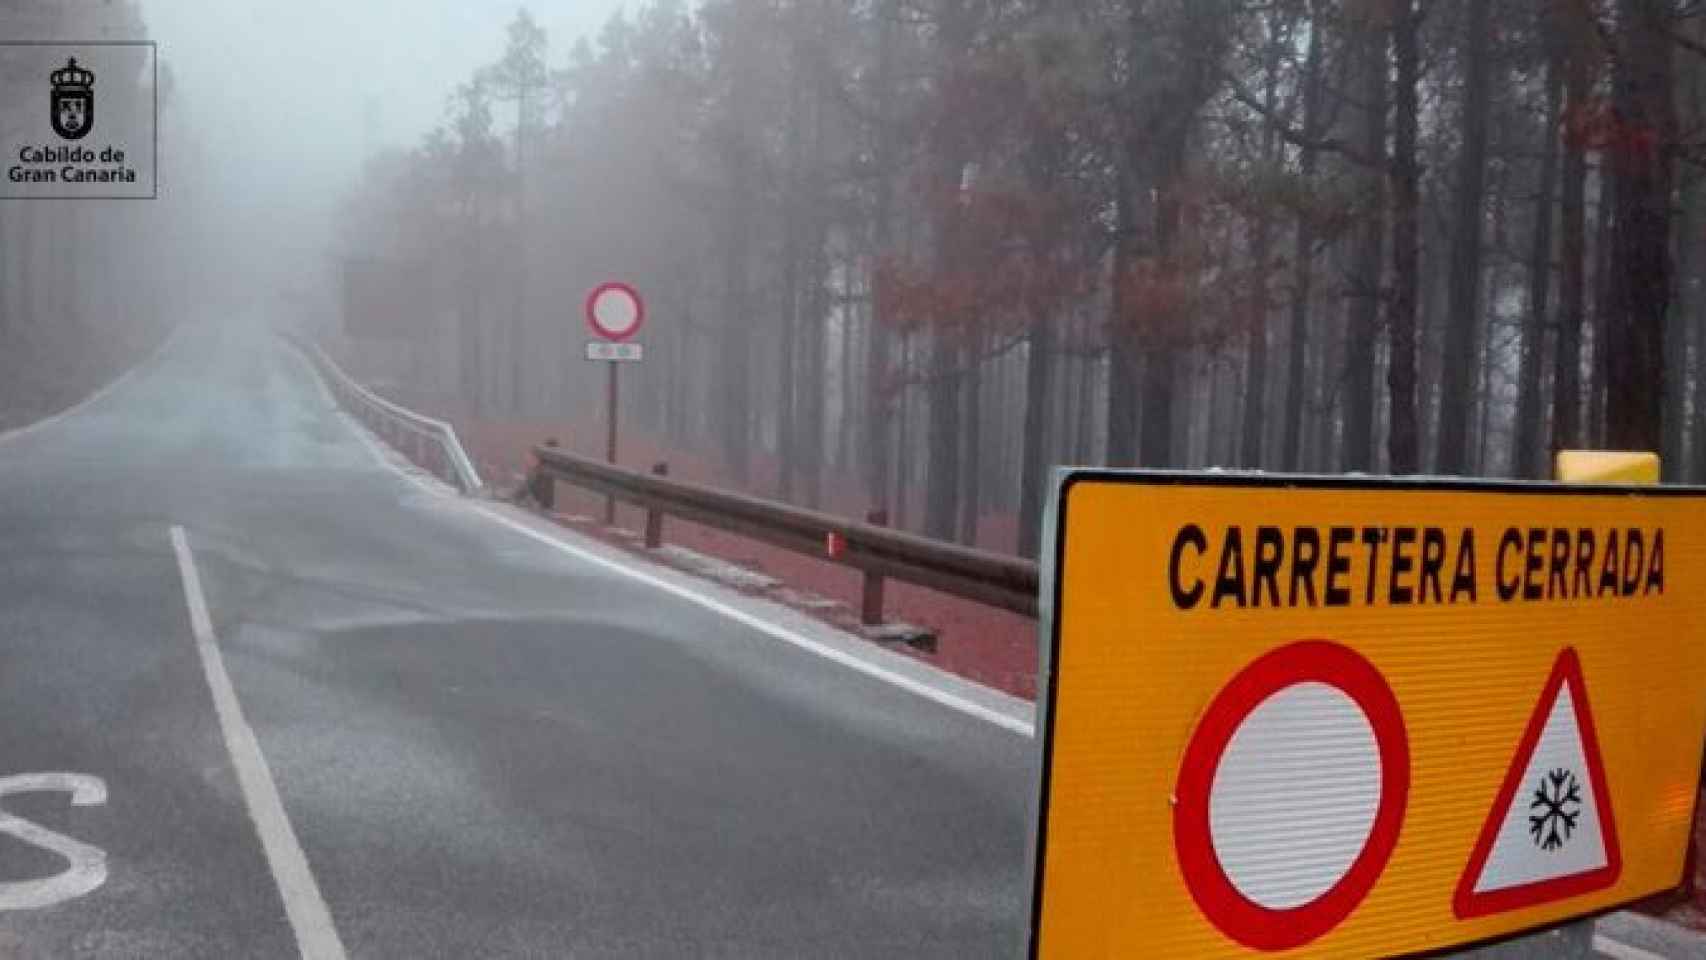 Una carretera cerca de Gran Canaria cortada al tráfico por hielo en el asfalto / CABILDO DE GRAN CANARIA